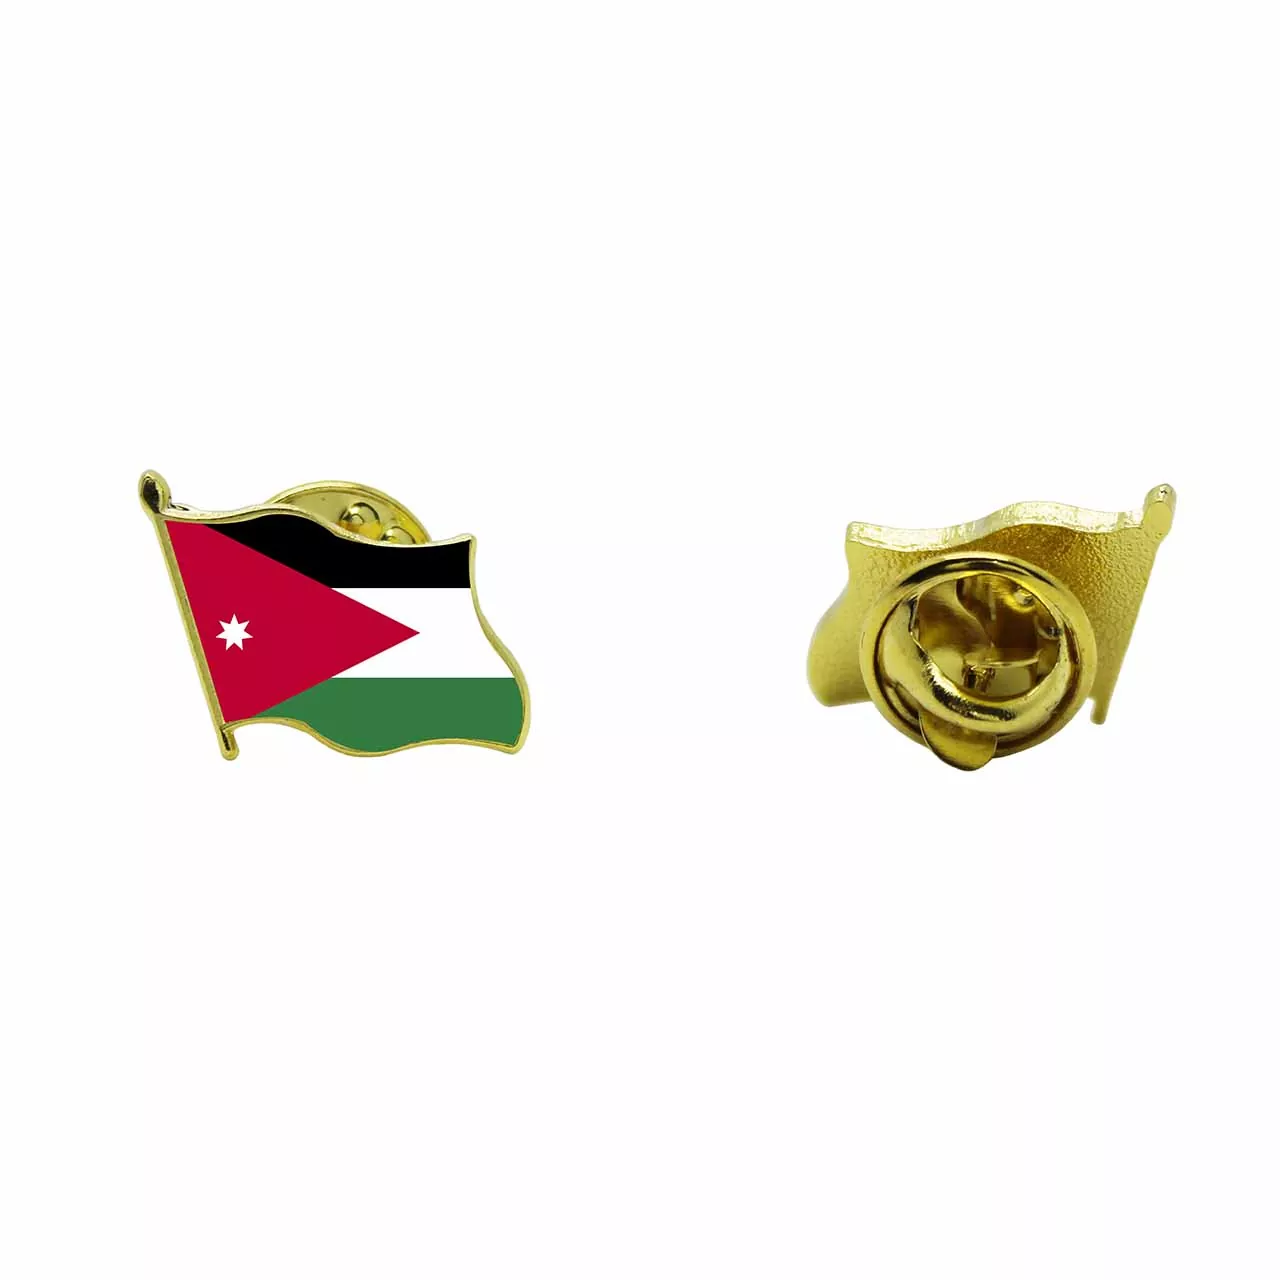 Jordan Metal Flag Lapel Pin